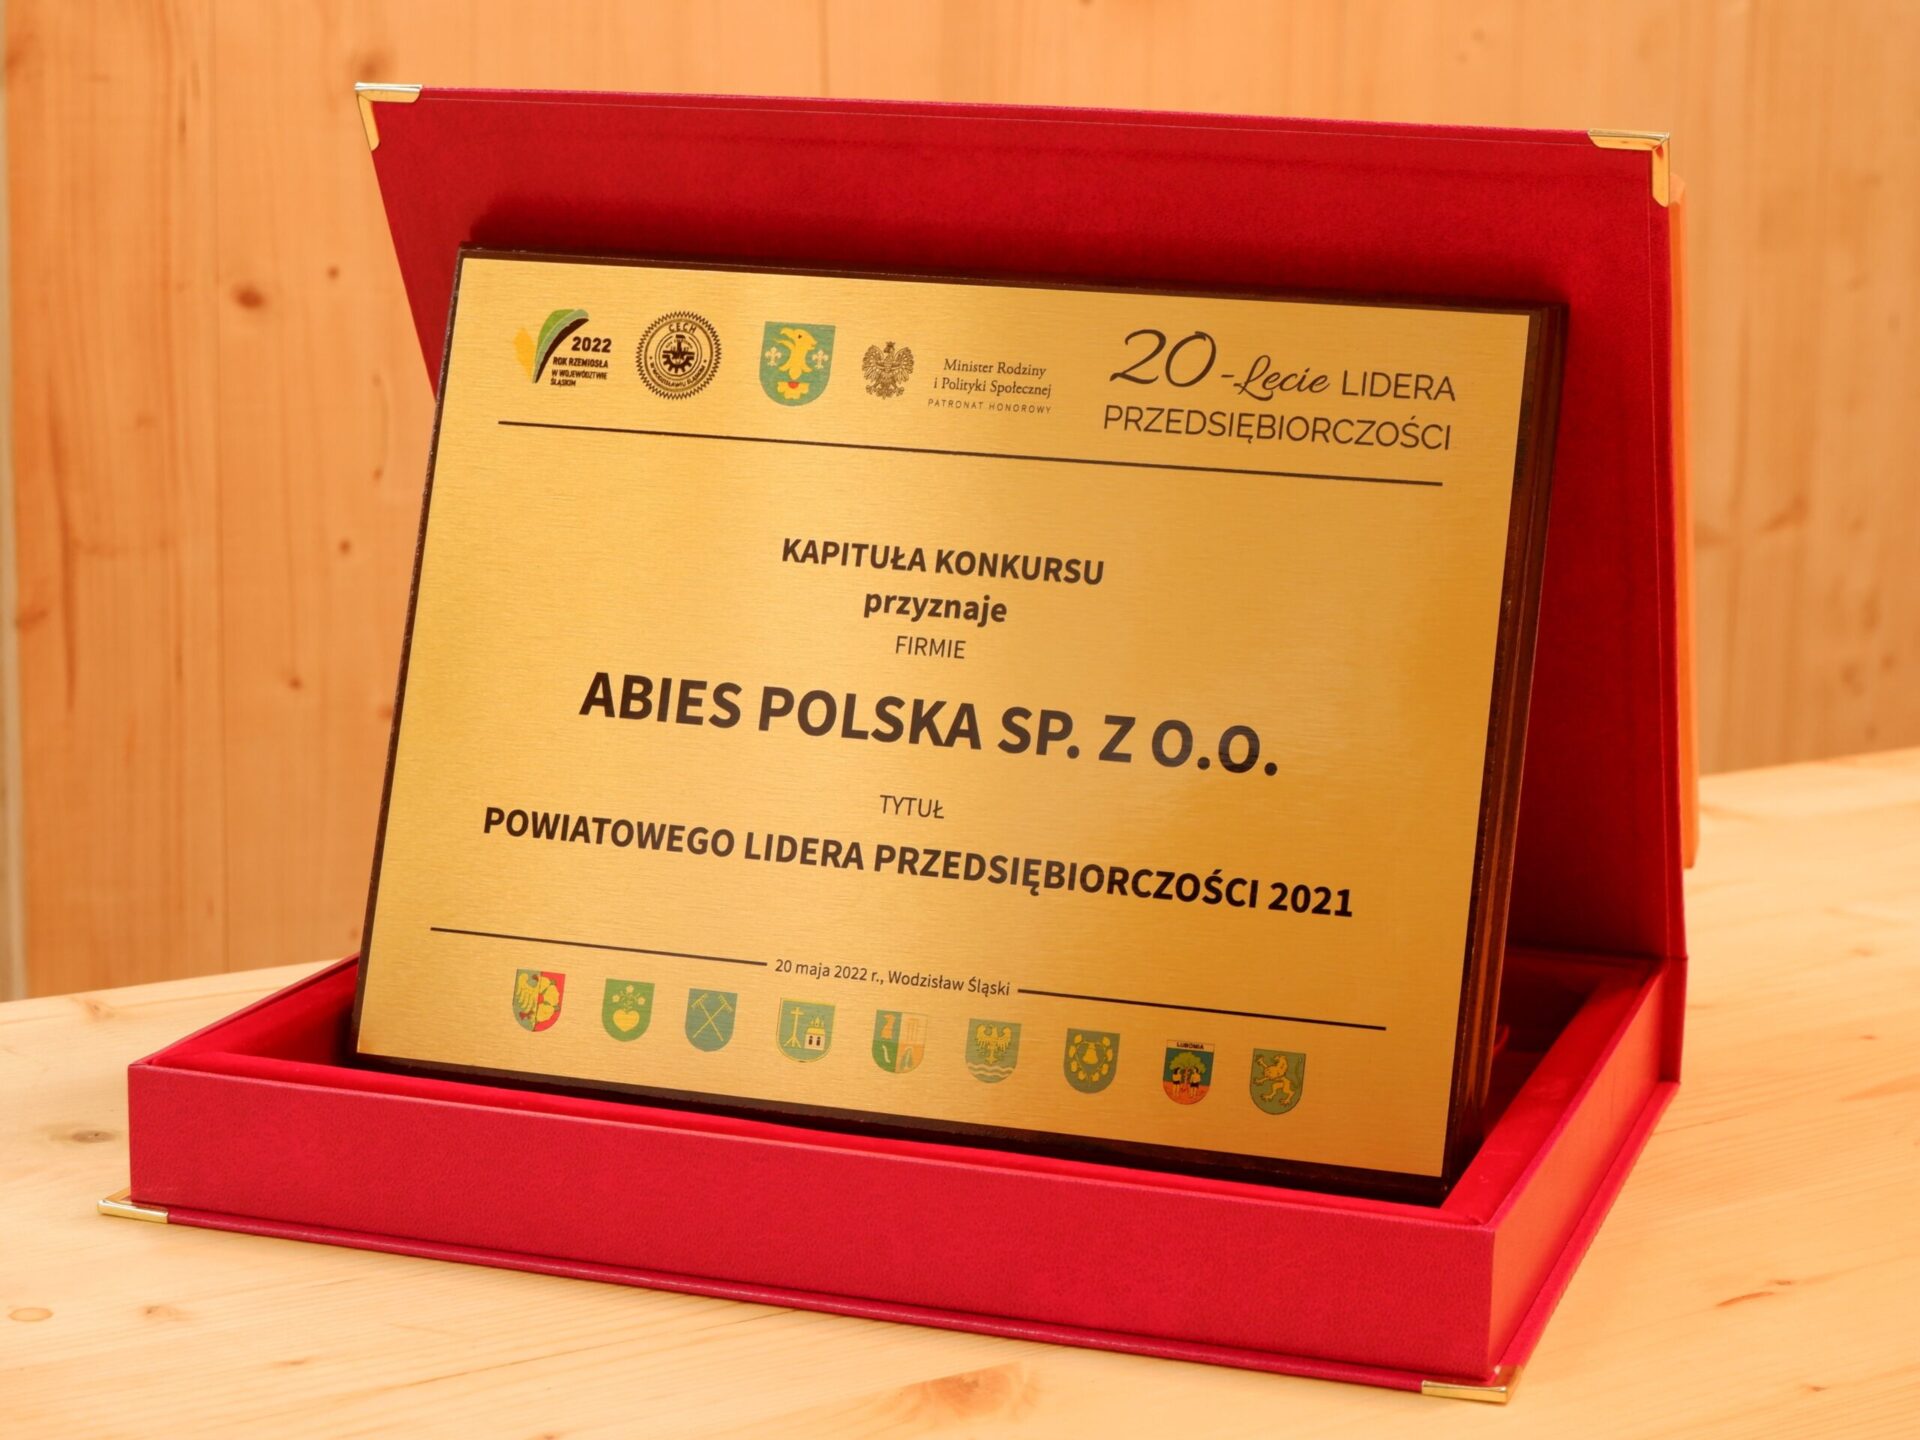 Statuetka powiatowego lidera przedsiębiorczości 2021 dla "Abies polska sp. z o.o."